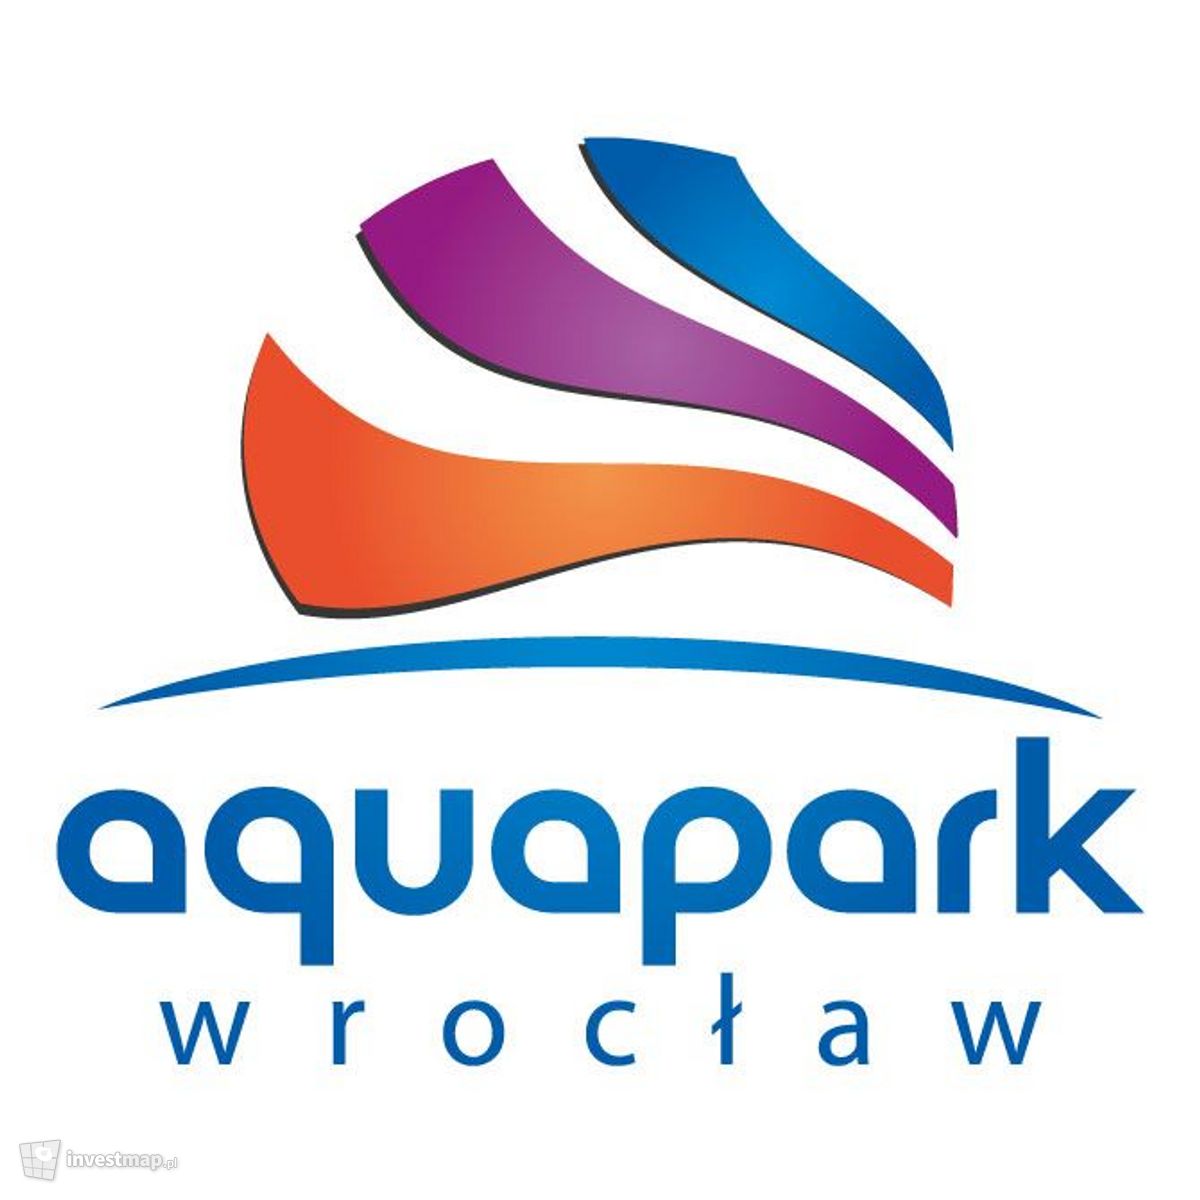 Wizualizacja Wrocławski Park Wodny (aquapark) dodał Jan Hawełko 